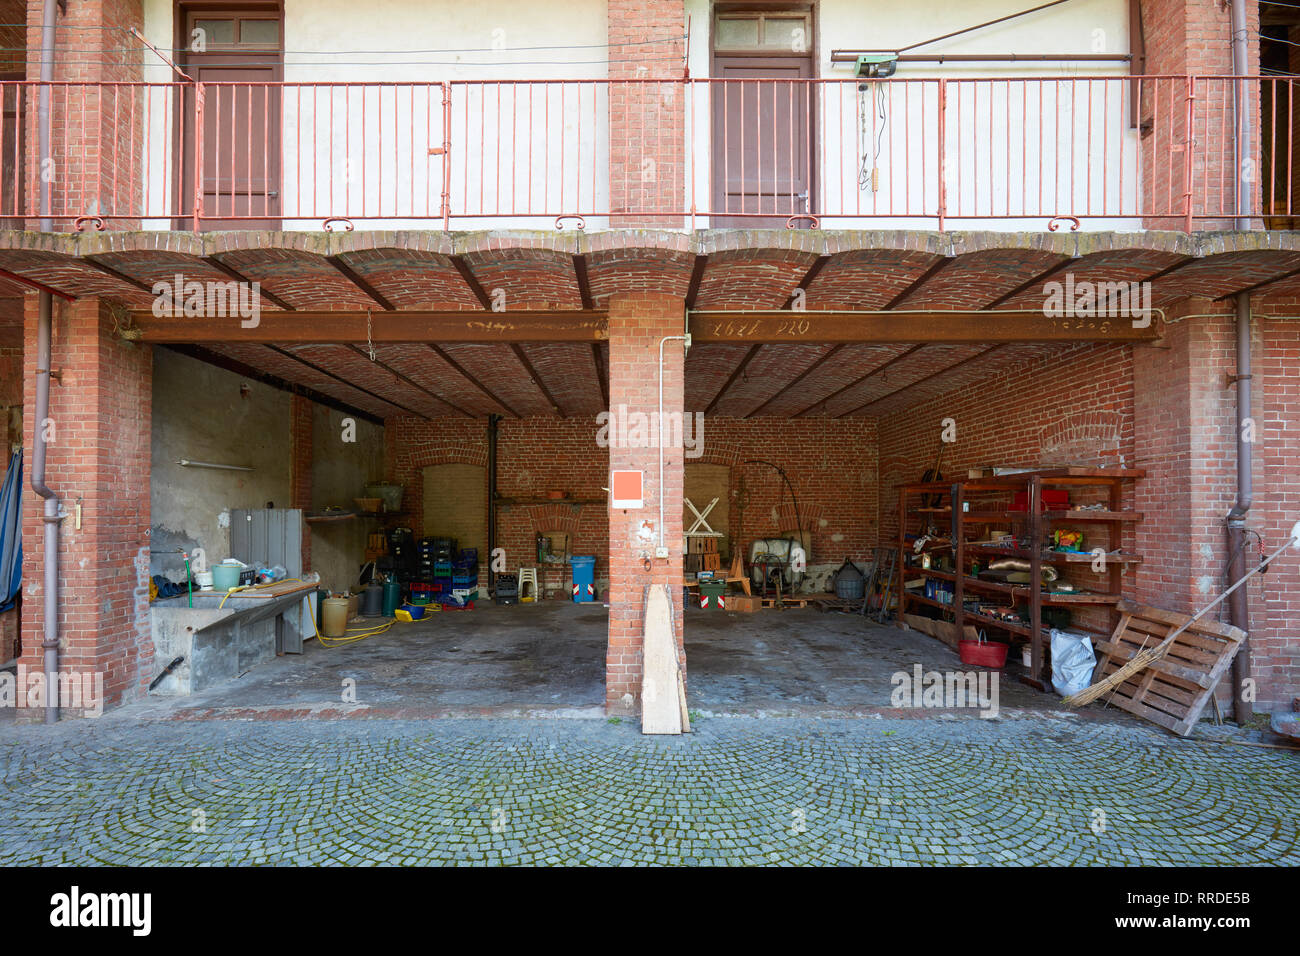 Ancienne maison de campagne, avec des murs de brique et de dépôt en désordre dans une journée ensoleillée en Italie Banque D'Images